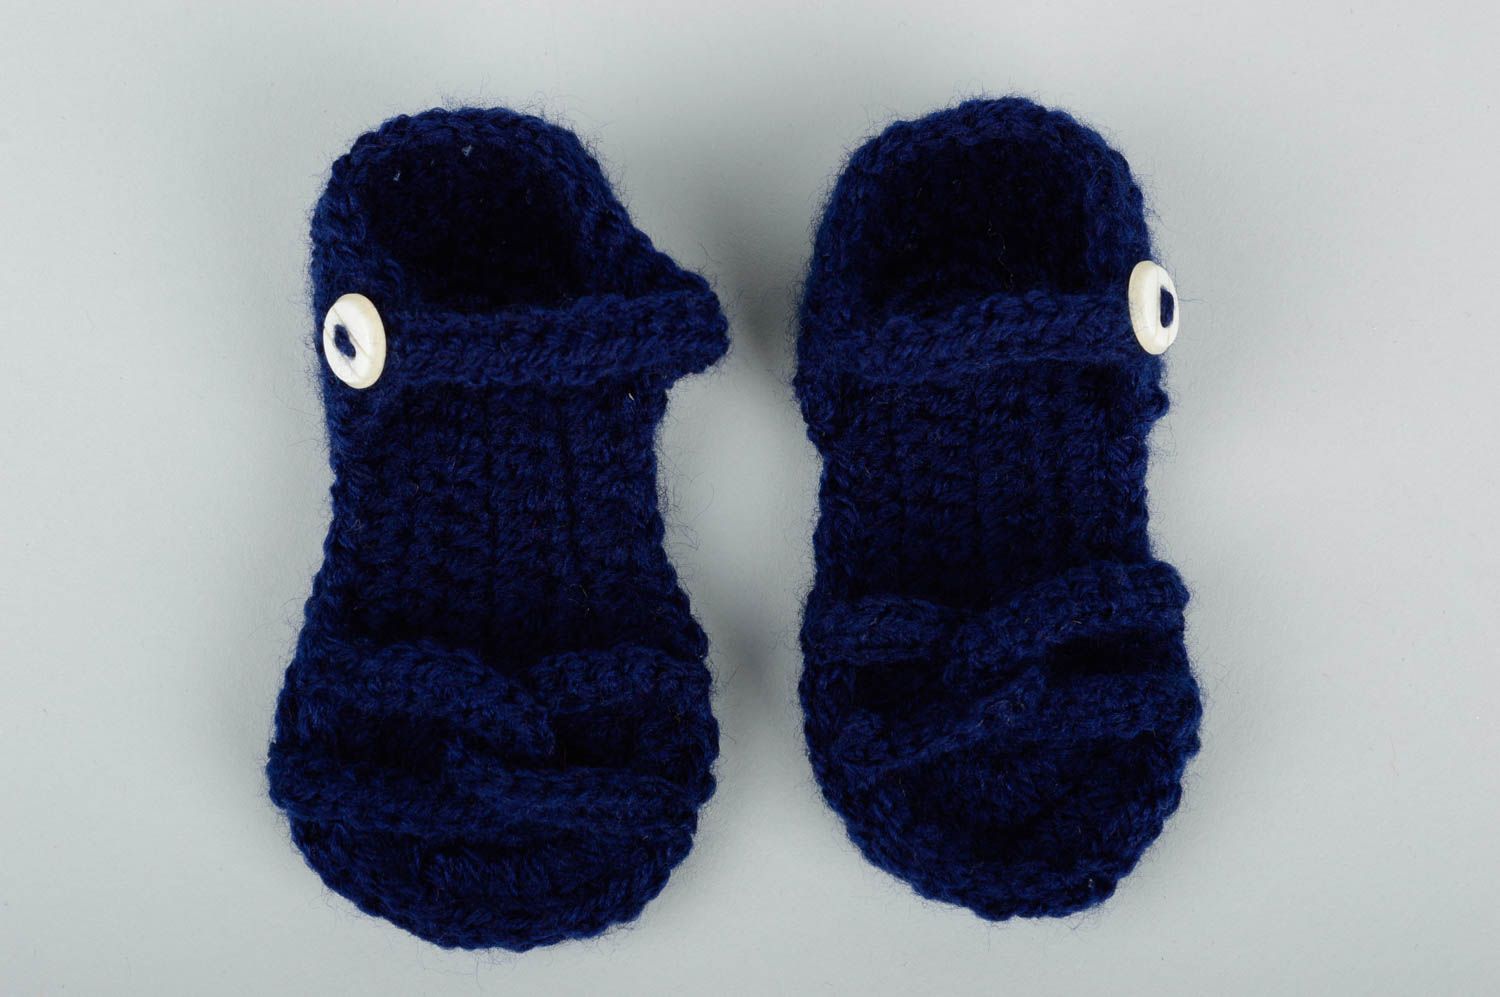 Cute handmade crochet baby booties warm baby booties designer baby accessories photo 1